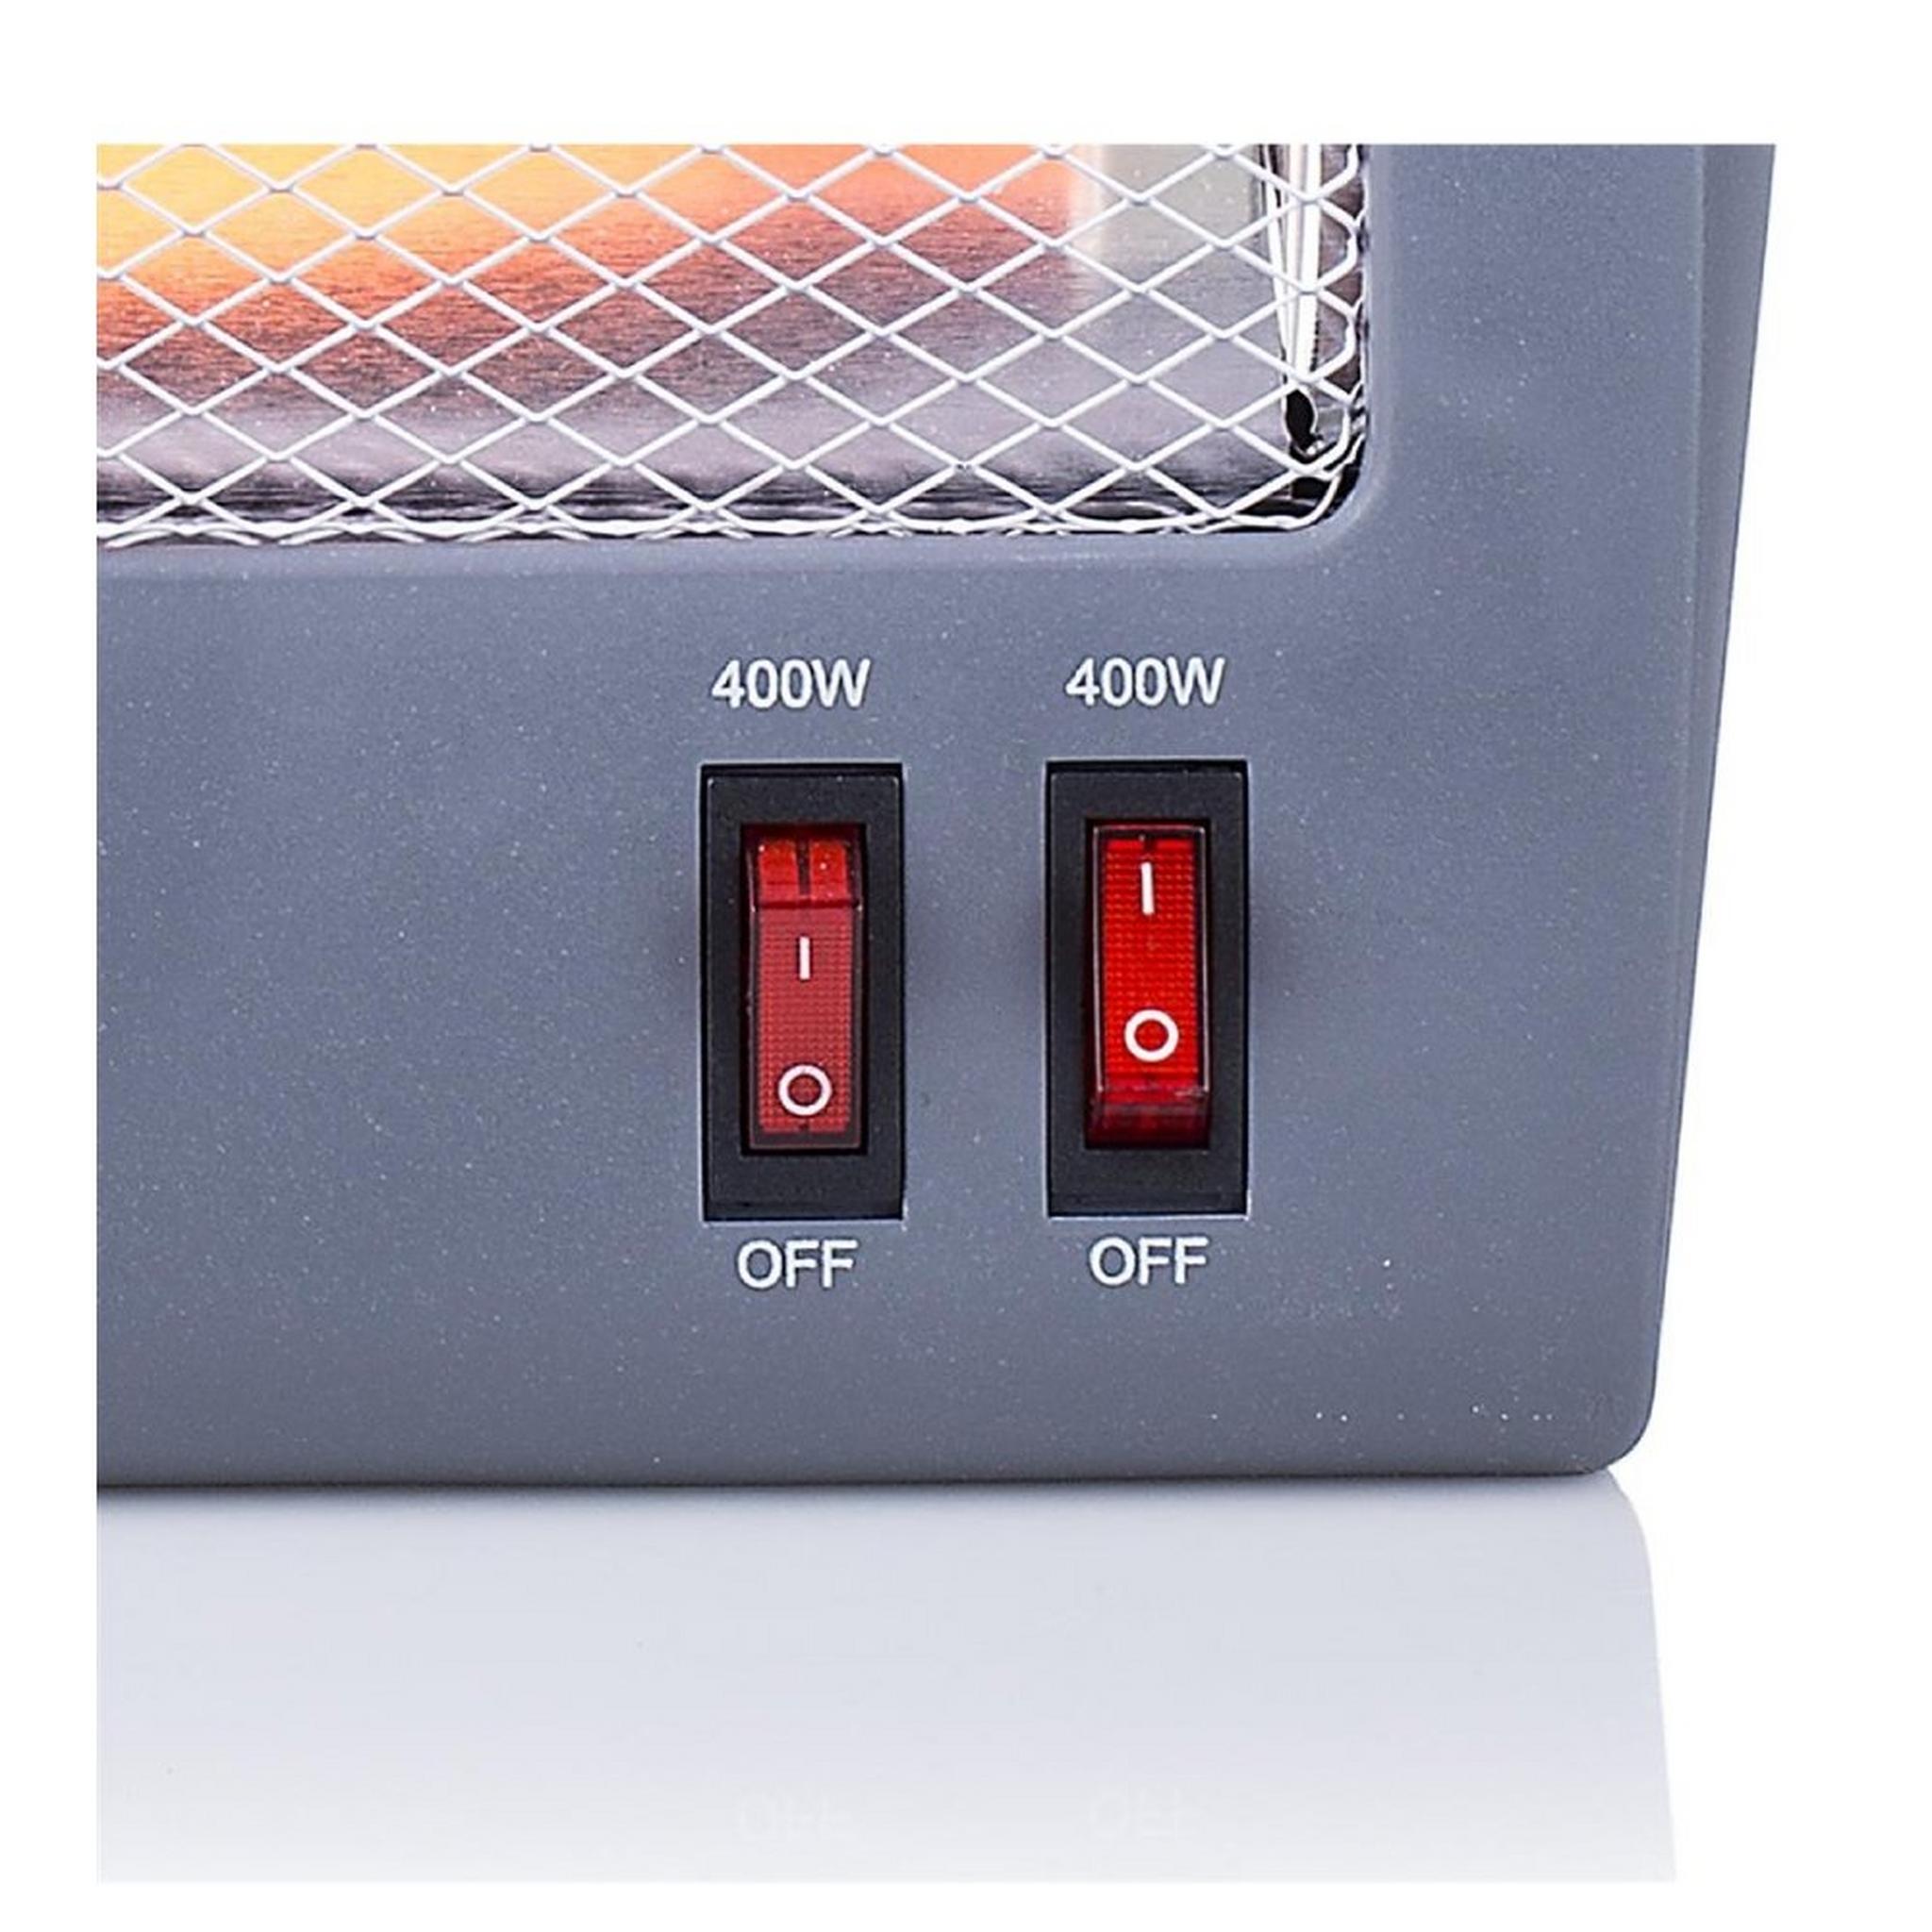 دفاية كهربائية هالوجين من برينسيس، 800 واط، 2 إعدادات للحرارة، 345011 - رمادي